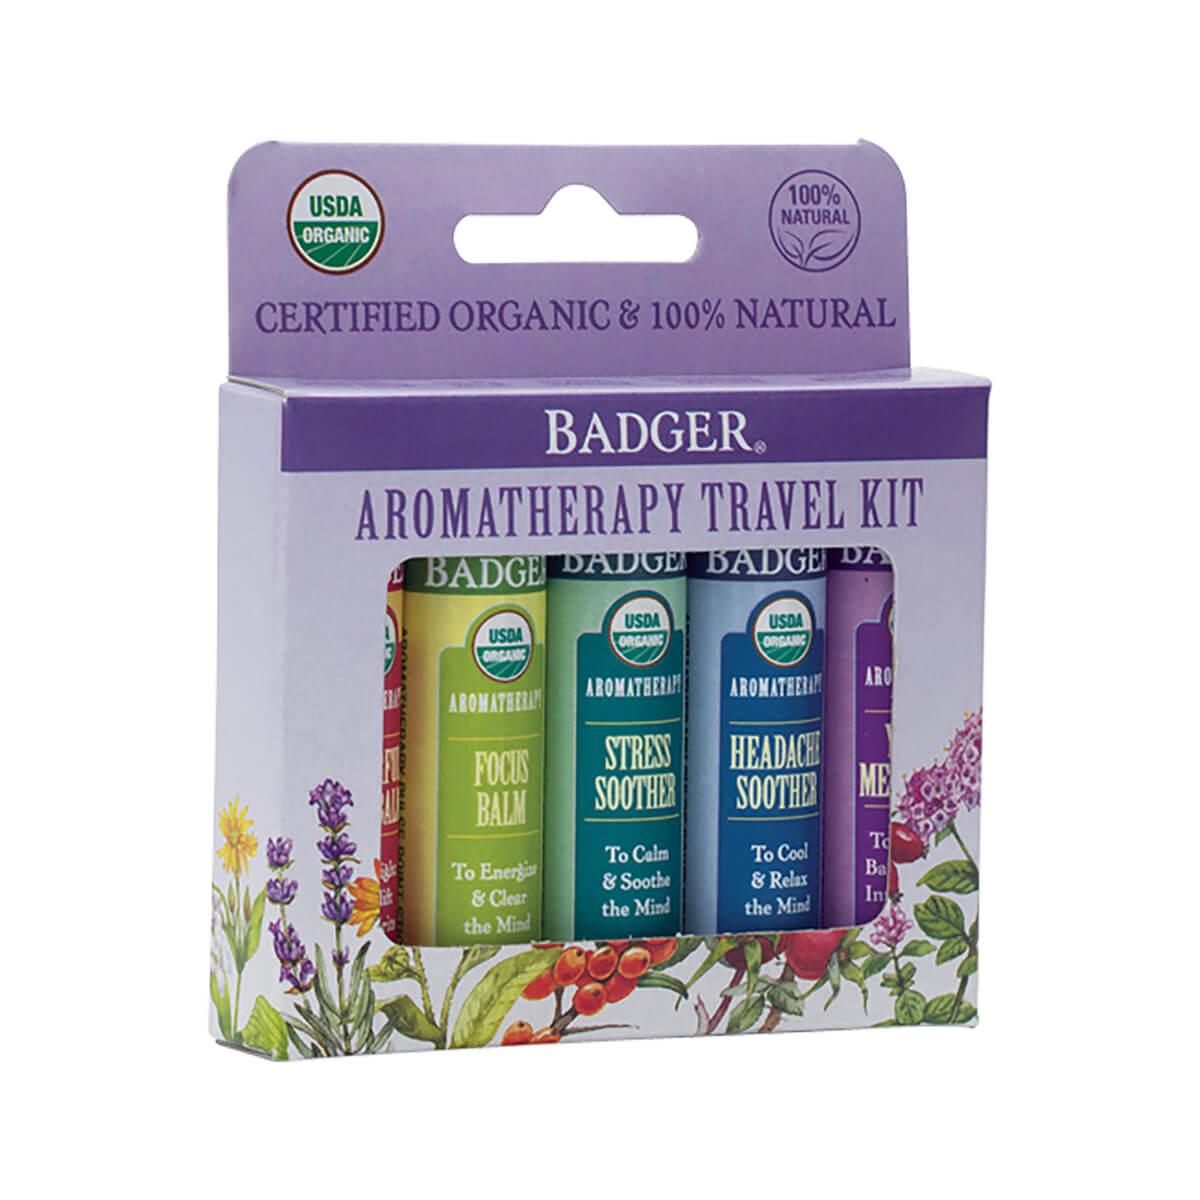  Badger Aromatherapy Travel Kit